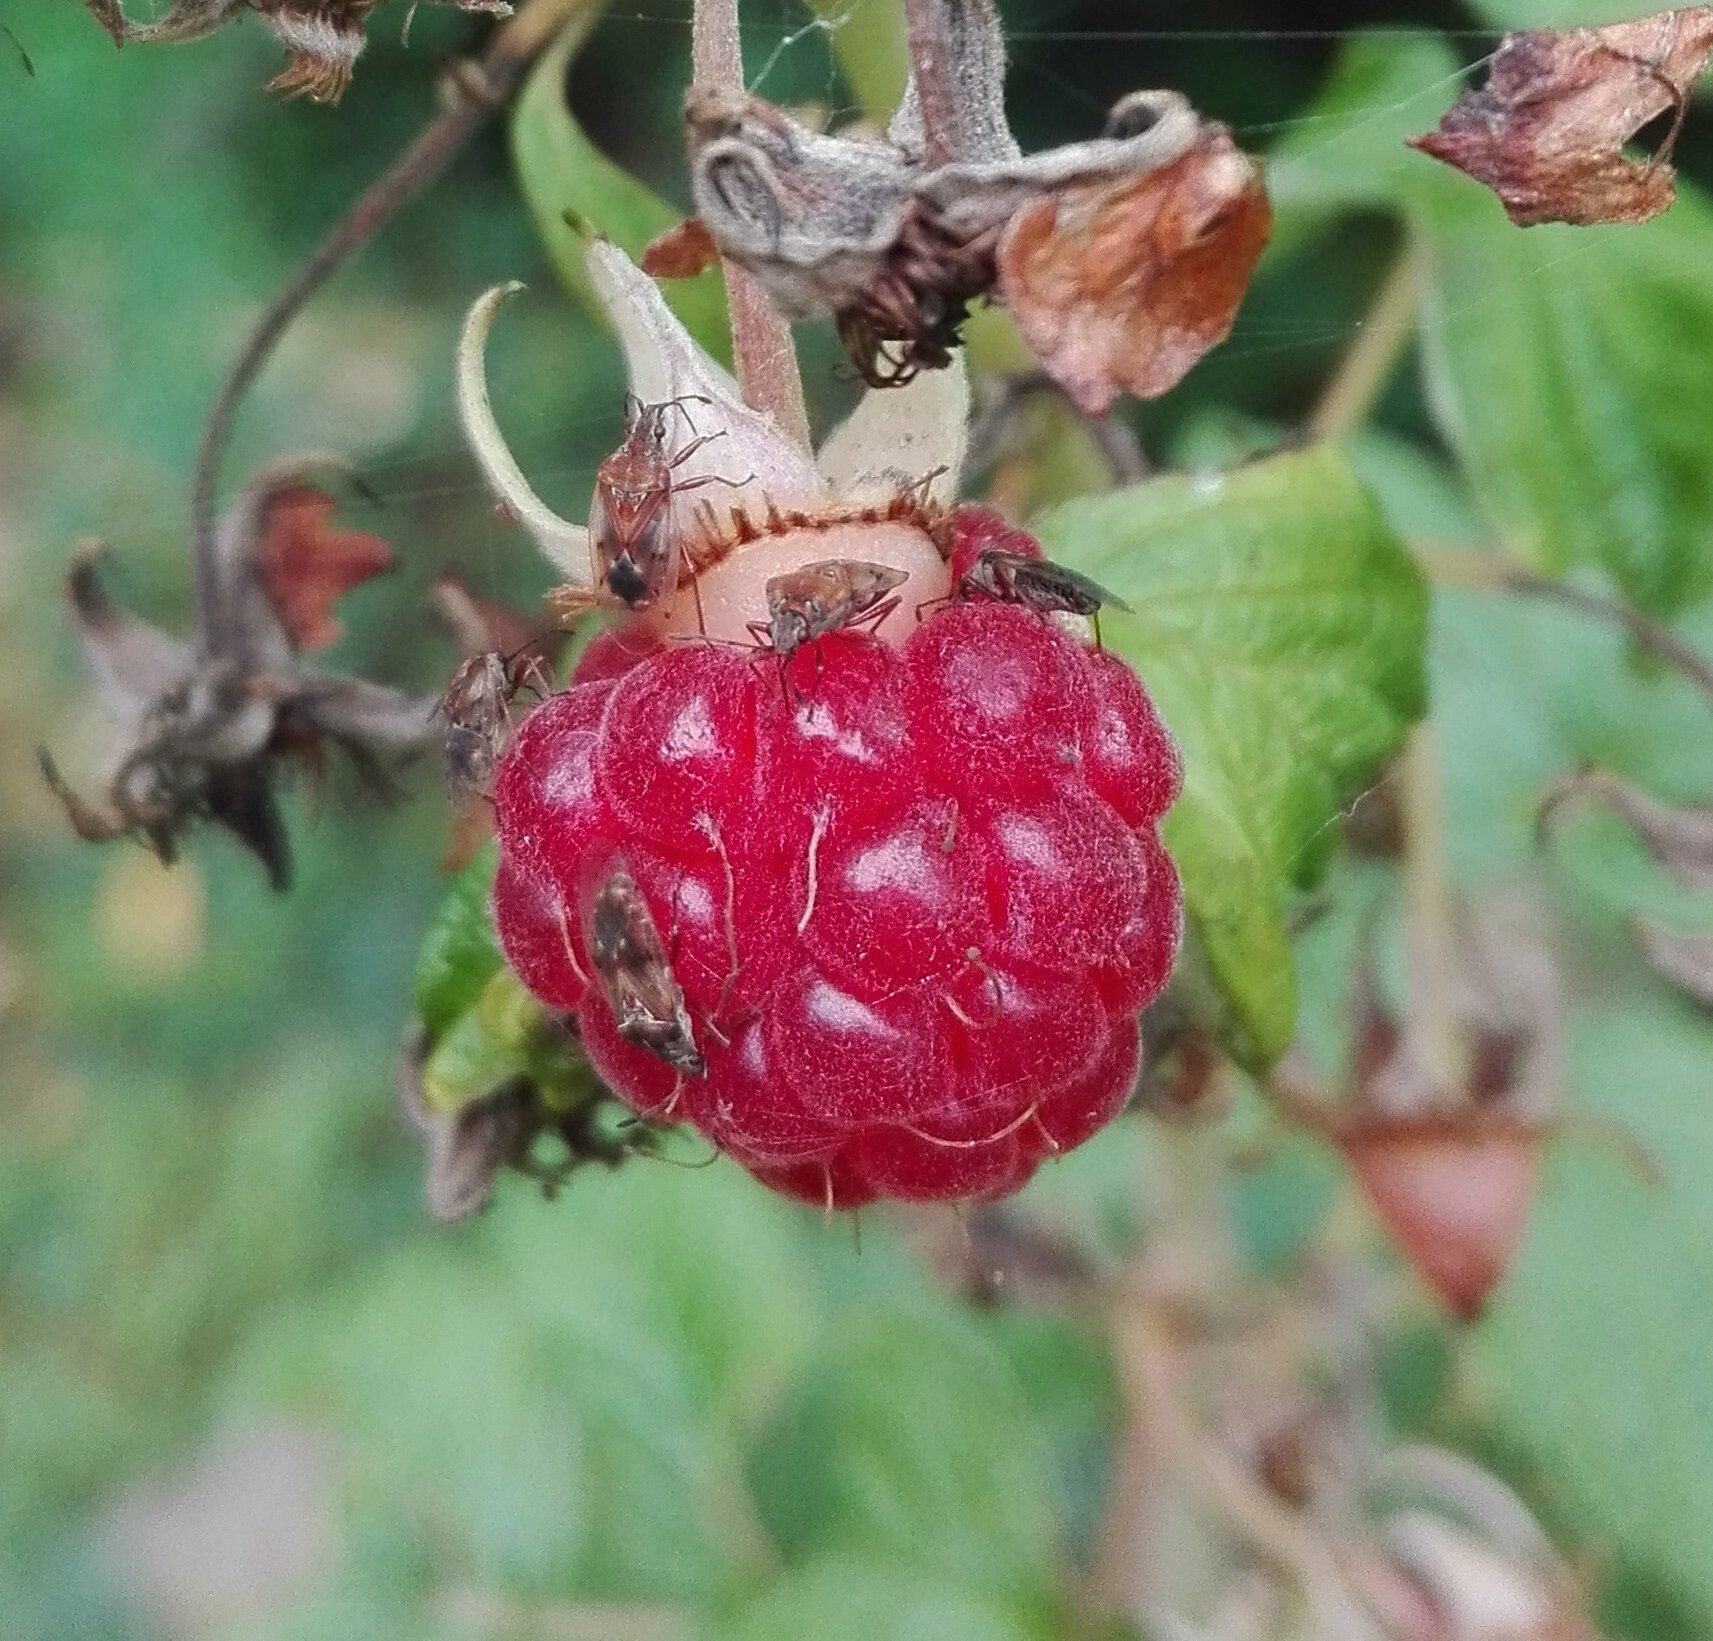 #335 Birch Catkin Bug (Kleidocerys resedae) on Raspberry